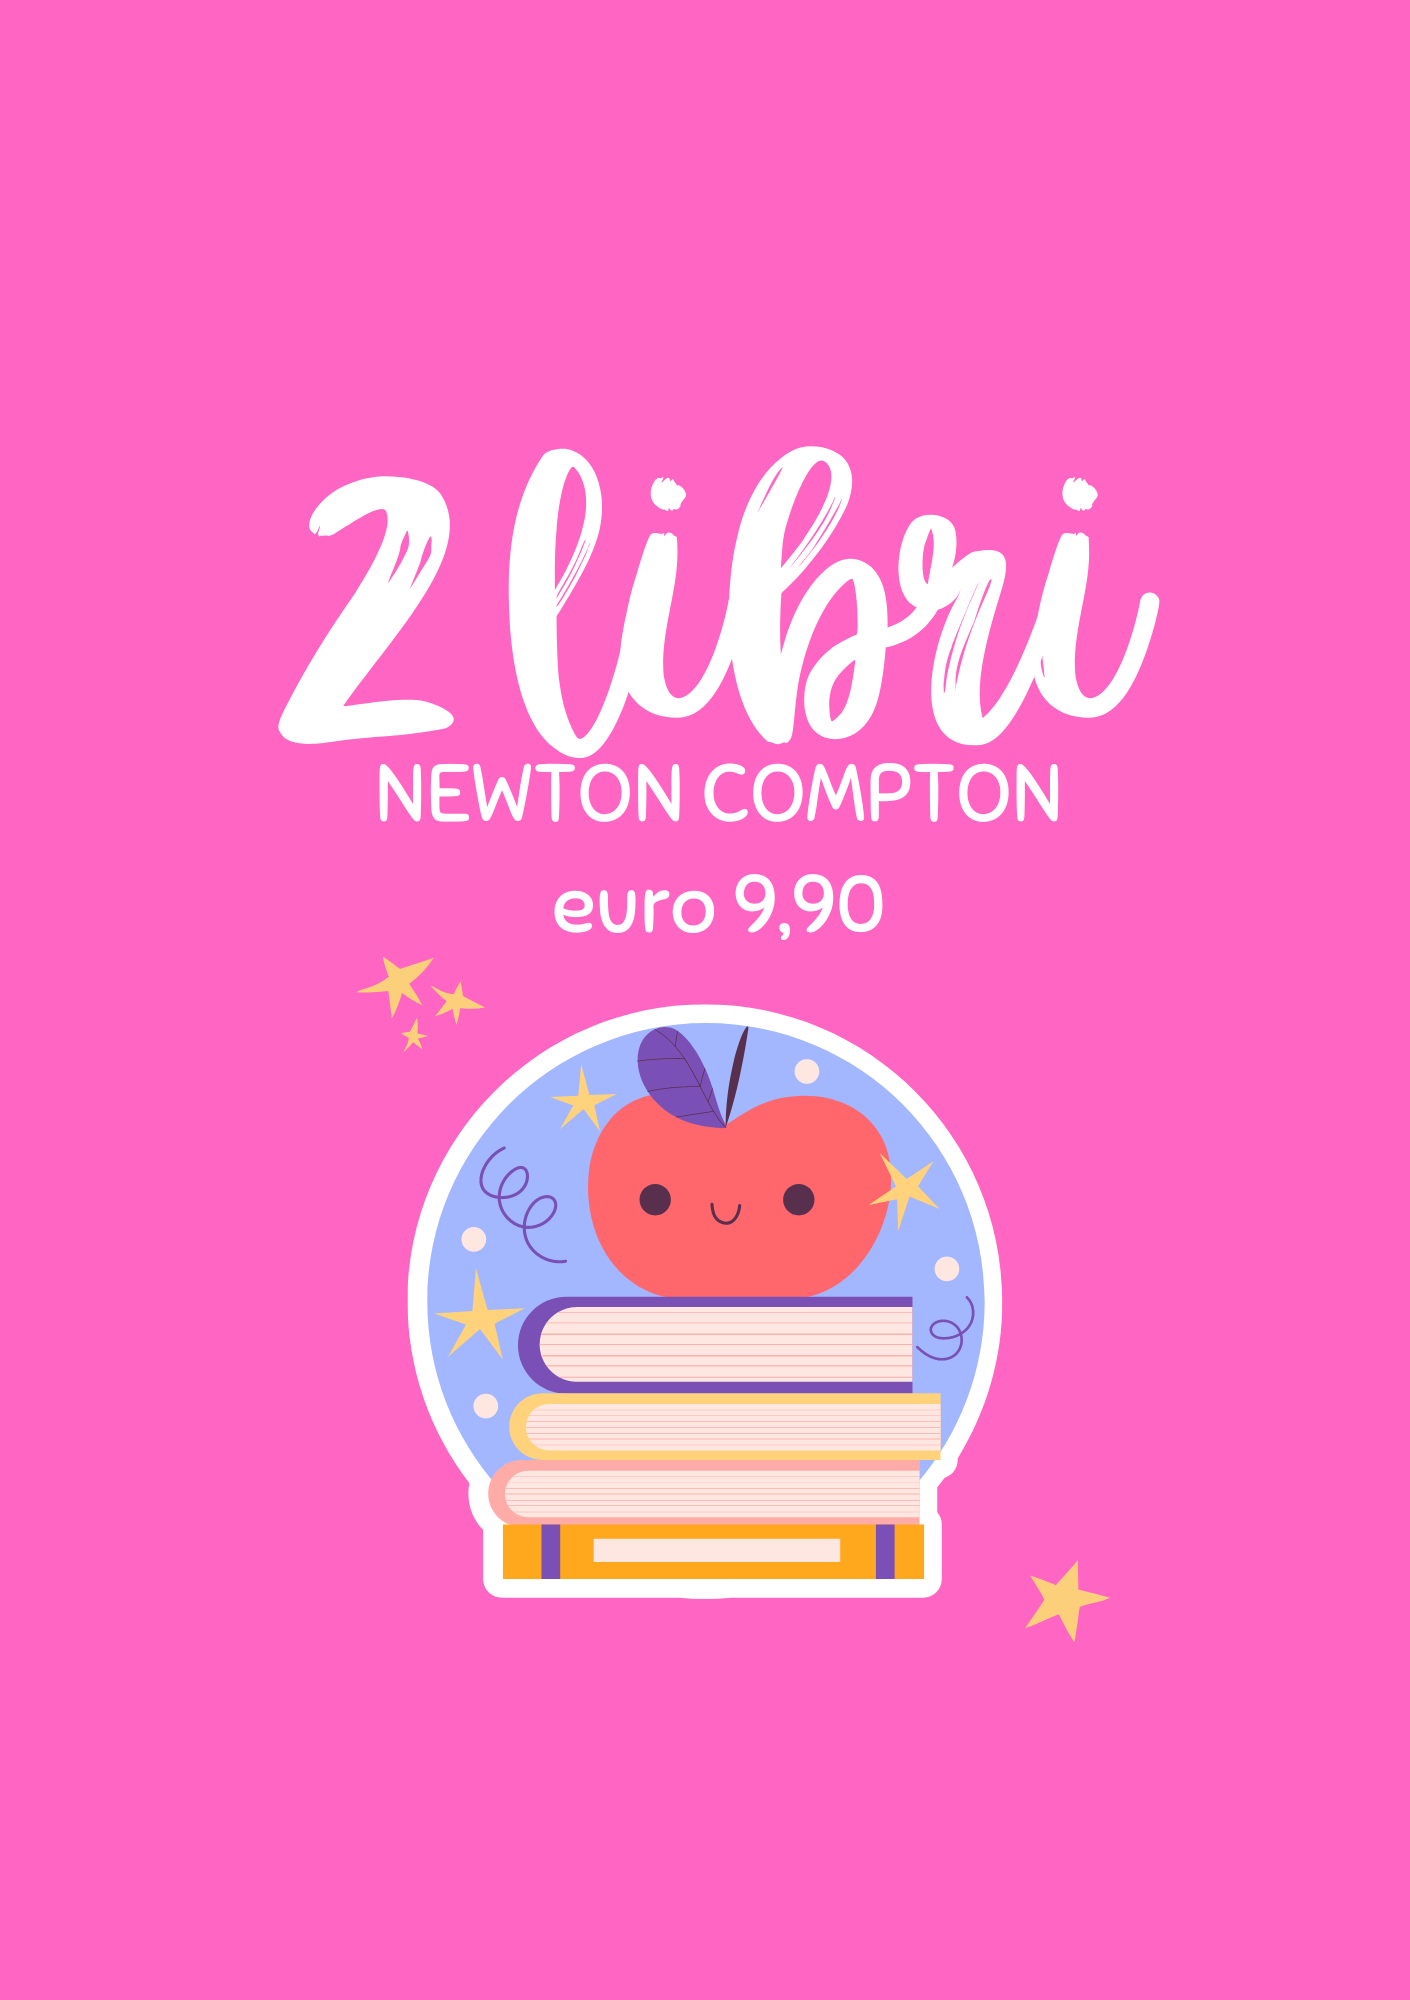 Promozione Newton Compton 2 Libri a Euro 9,90 - OHLALA! Concept Creativo